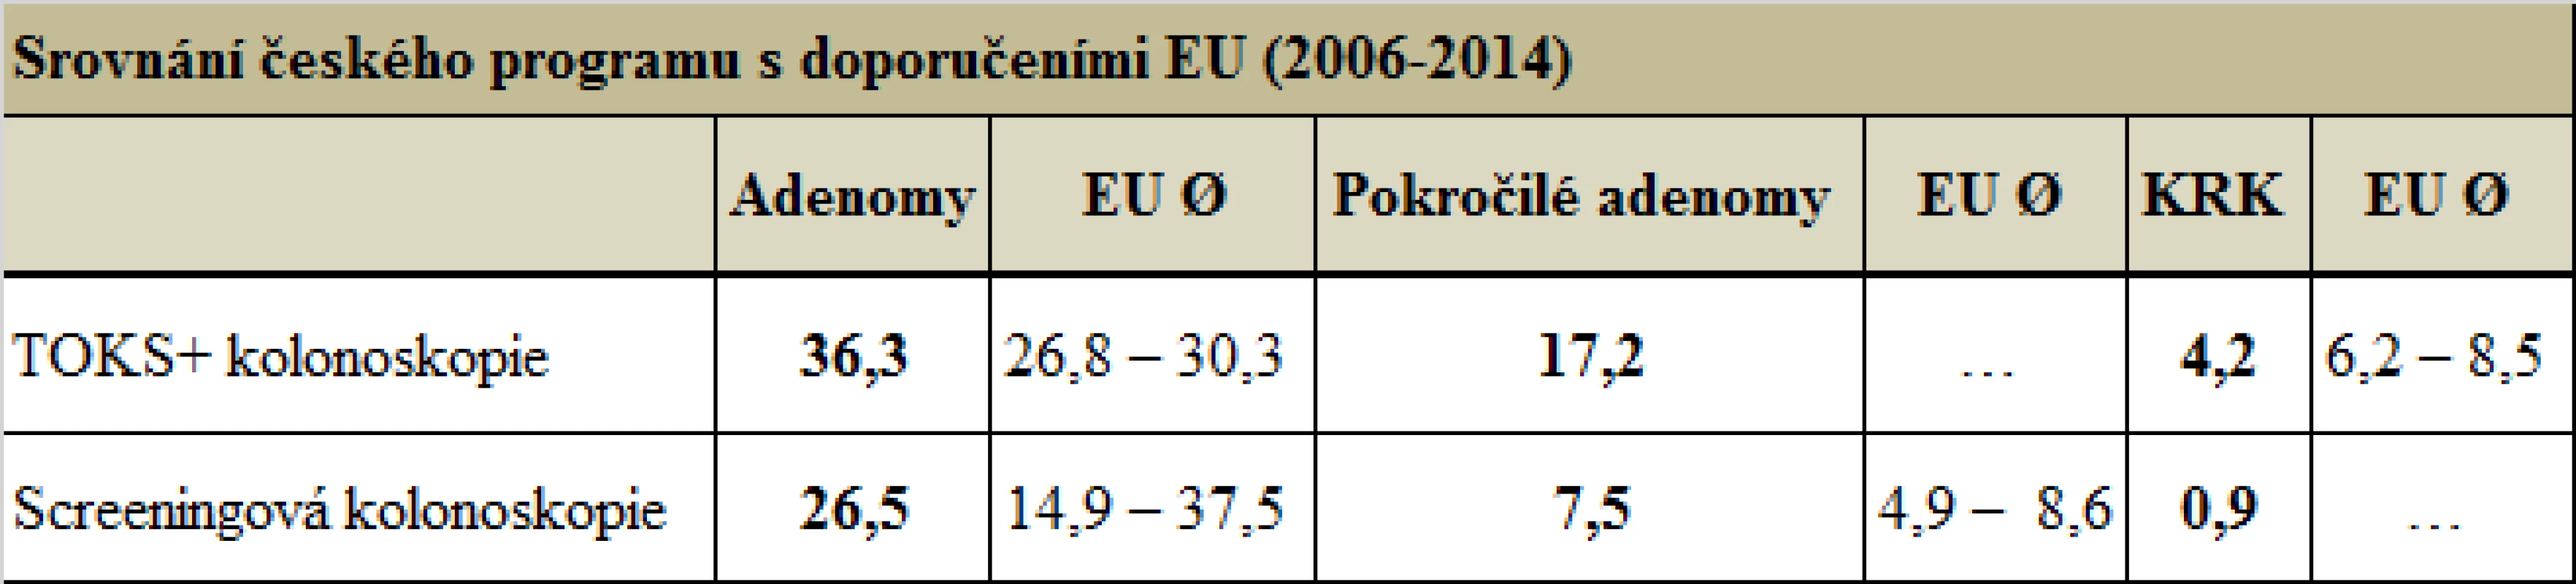 Srovnání českého programu s doporučeními EU (2006–2014) (zdroj: Registr screeningu KRK a Evropská doporučení pro screening KRK)